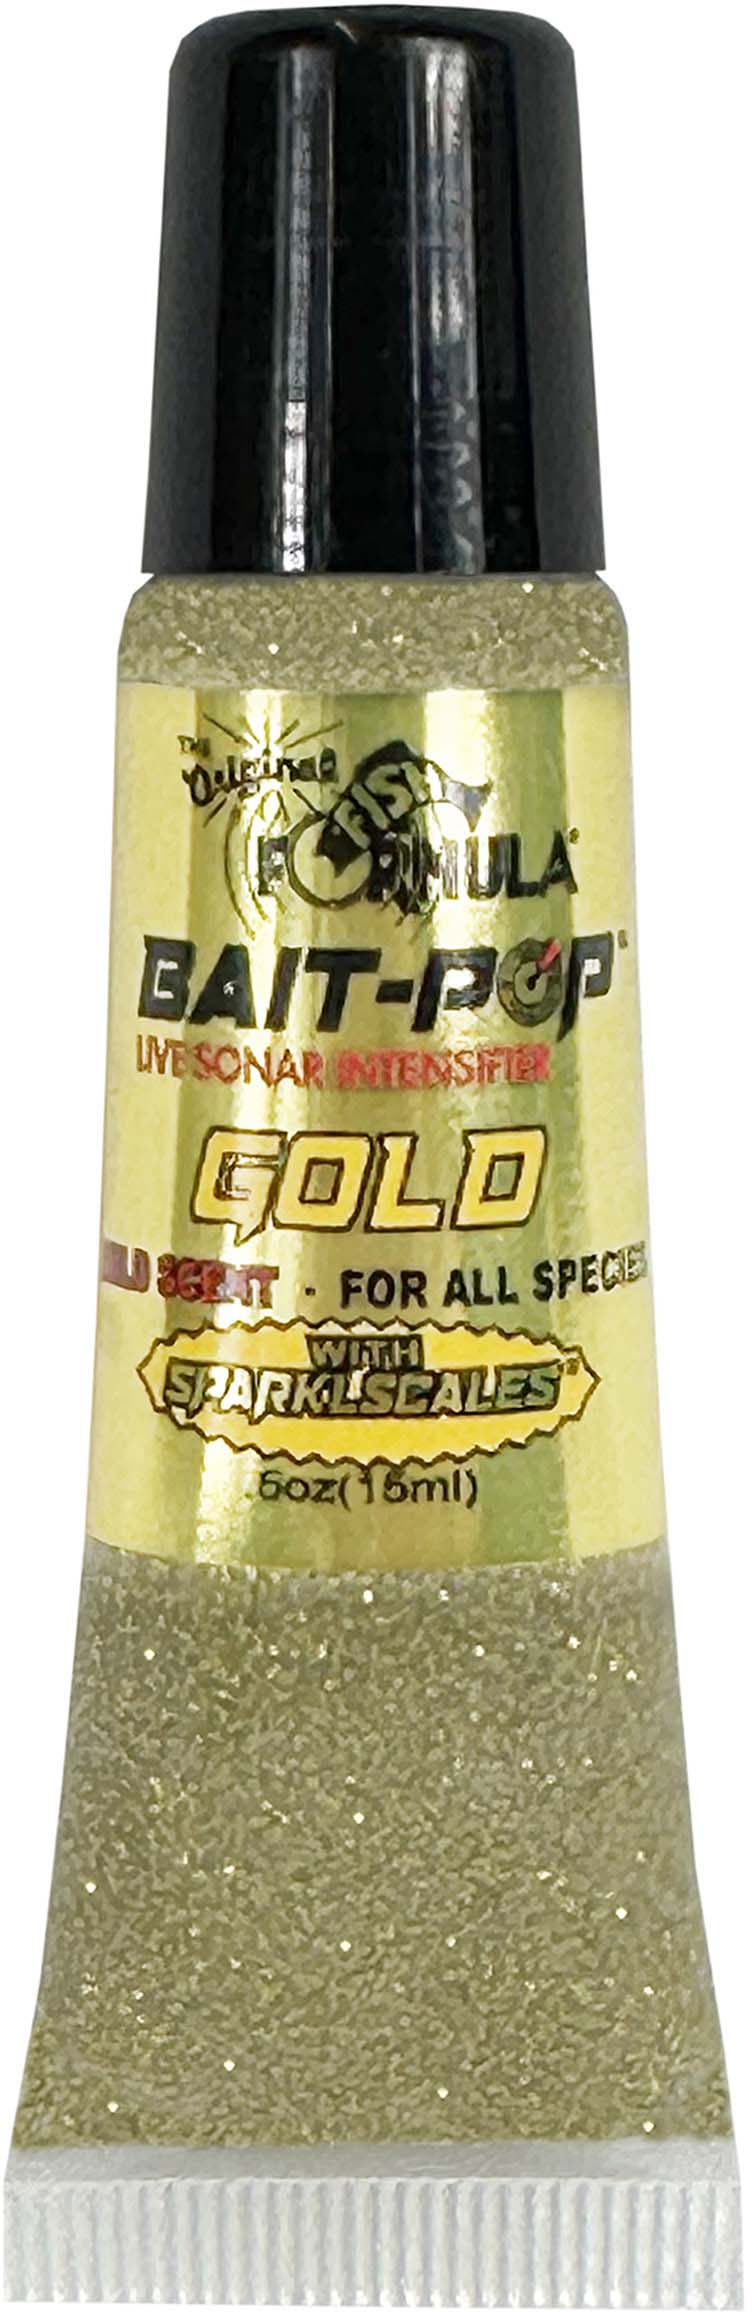 Bait Pop and Original Fish Formula Attractants